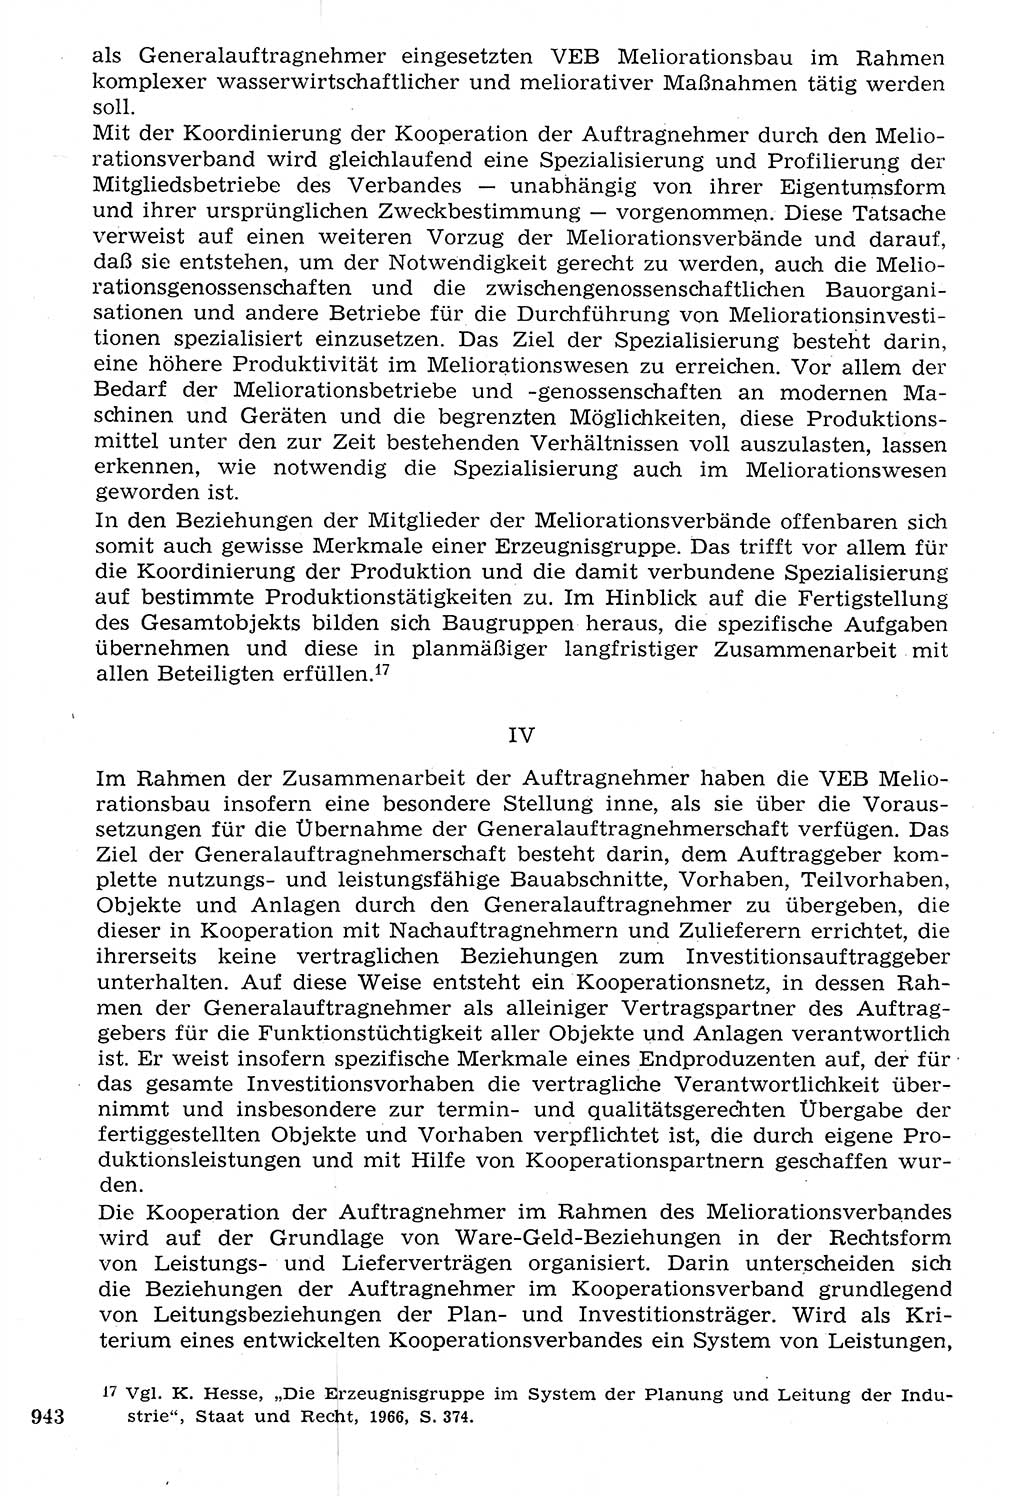 Staat und Recht (StuR), 17. Jahrgang [Deutsche Demokratische Republik (DDR)] 1968, Seite 943 (StuR DDR 1968, S. 943)